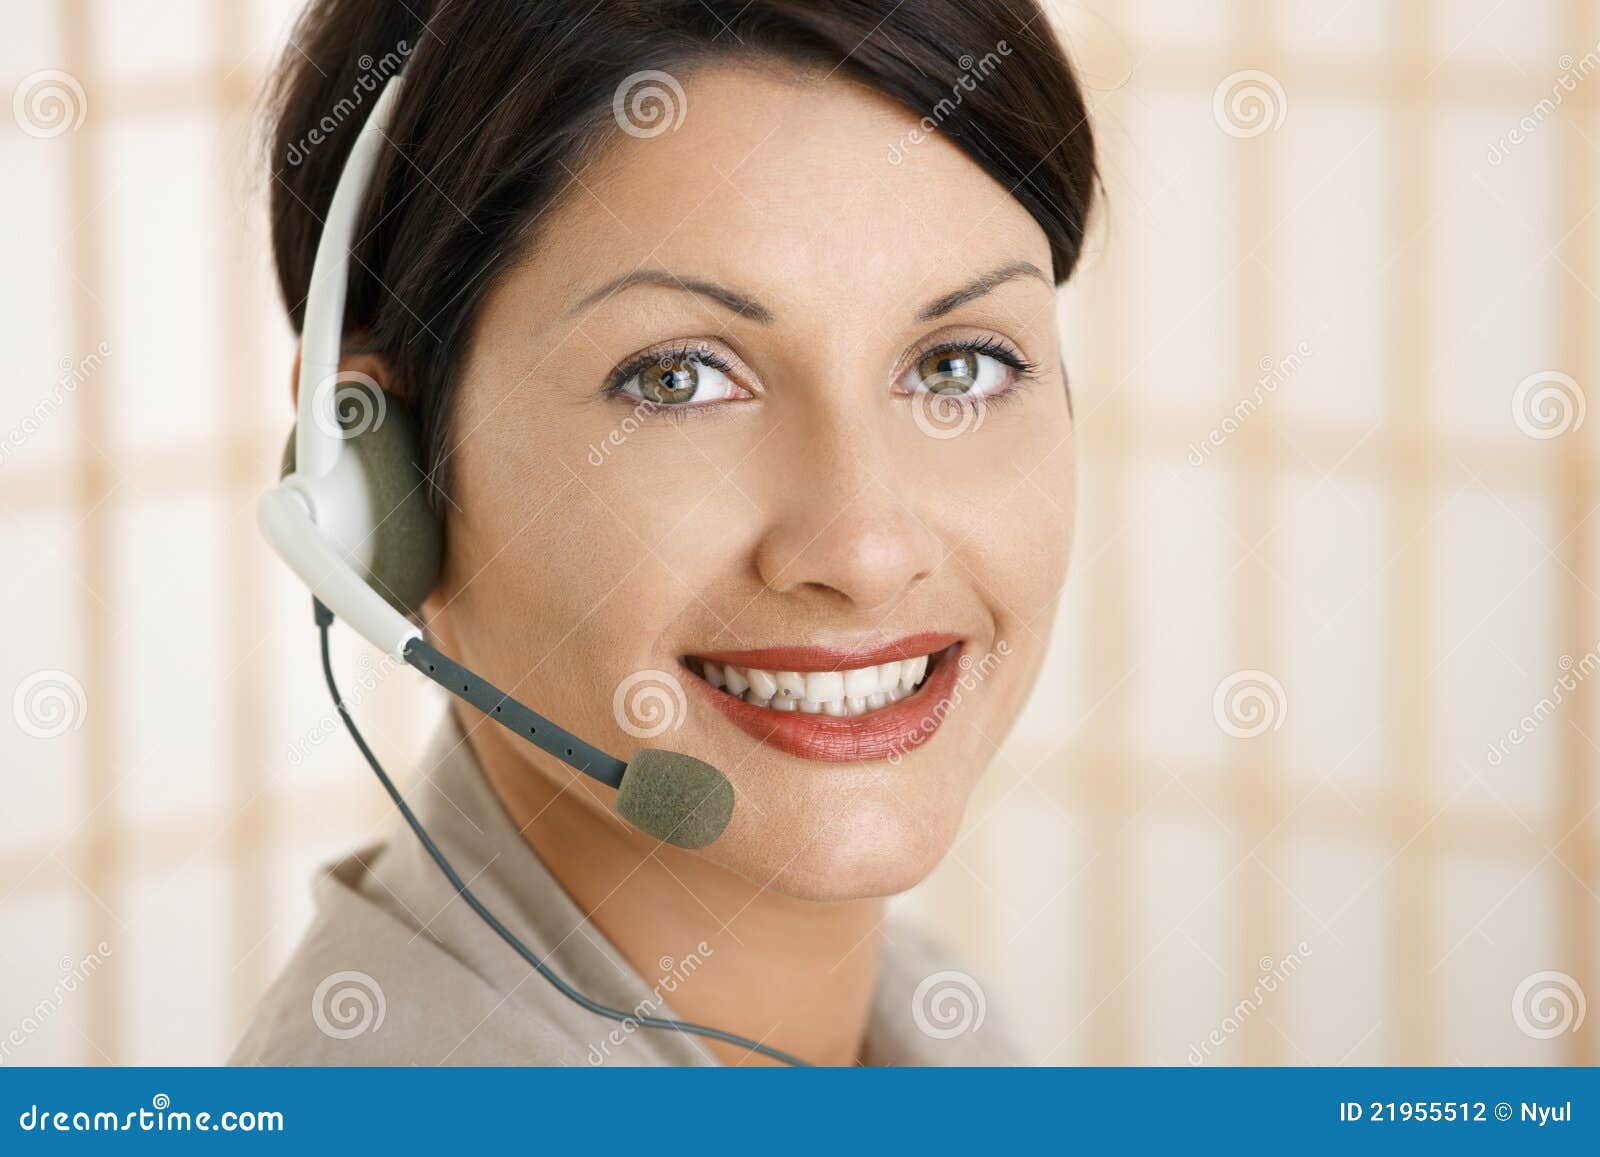 Retrato do close up do operador do serviço de atenção a o cliente. Retrato do close up do operador atrativo do serviço de atenção a o cliente que fala em auriculares.